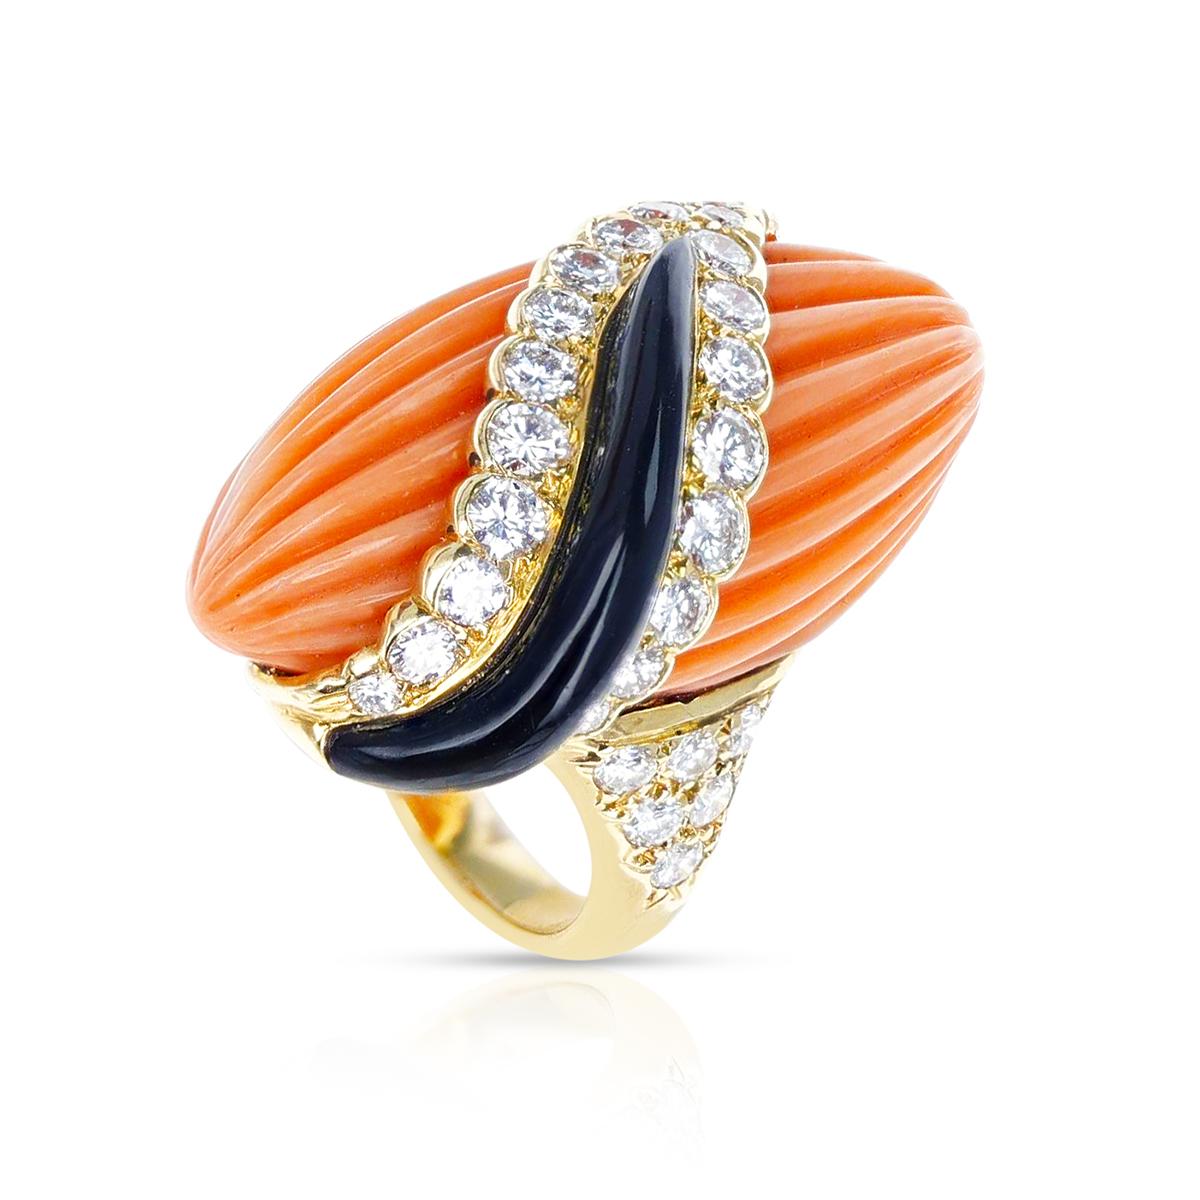 Ein französischer Andre Vassort Ring mit geschnitzter Koralle, Onyx und Diamanten. Gesamtgewicht: 16,30 Gramm. Ring Größe US 5.25.